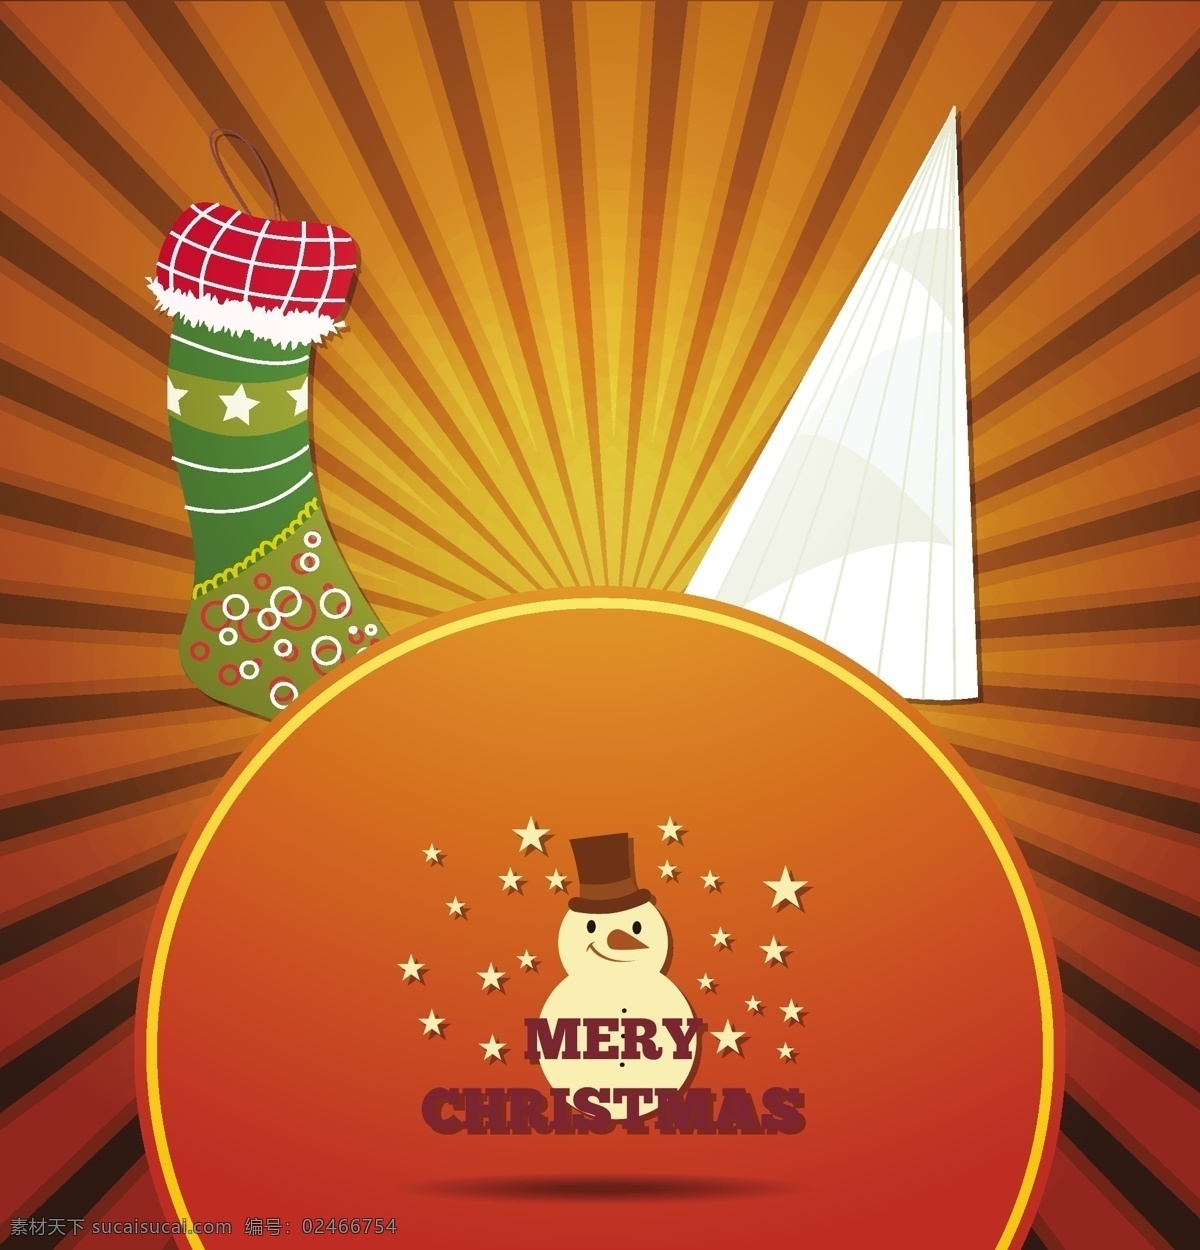 圣诞插画海报 圣诞快乐 圣诞 节日素材 新年 新年快乐 海报 广告 插画 圣诞节 矢量素材